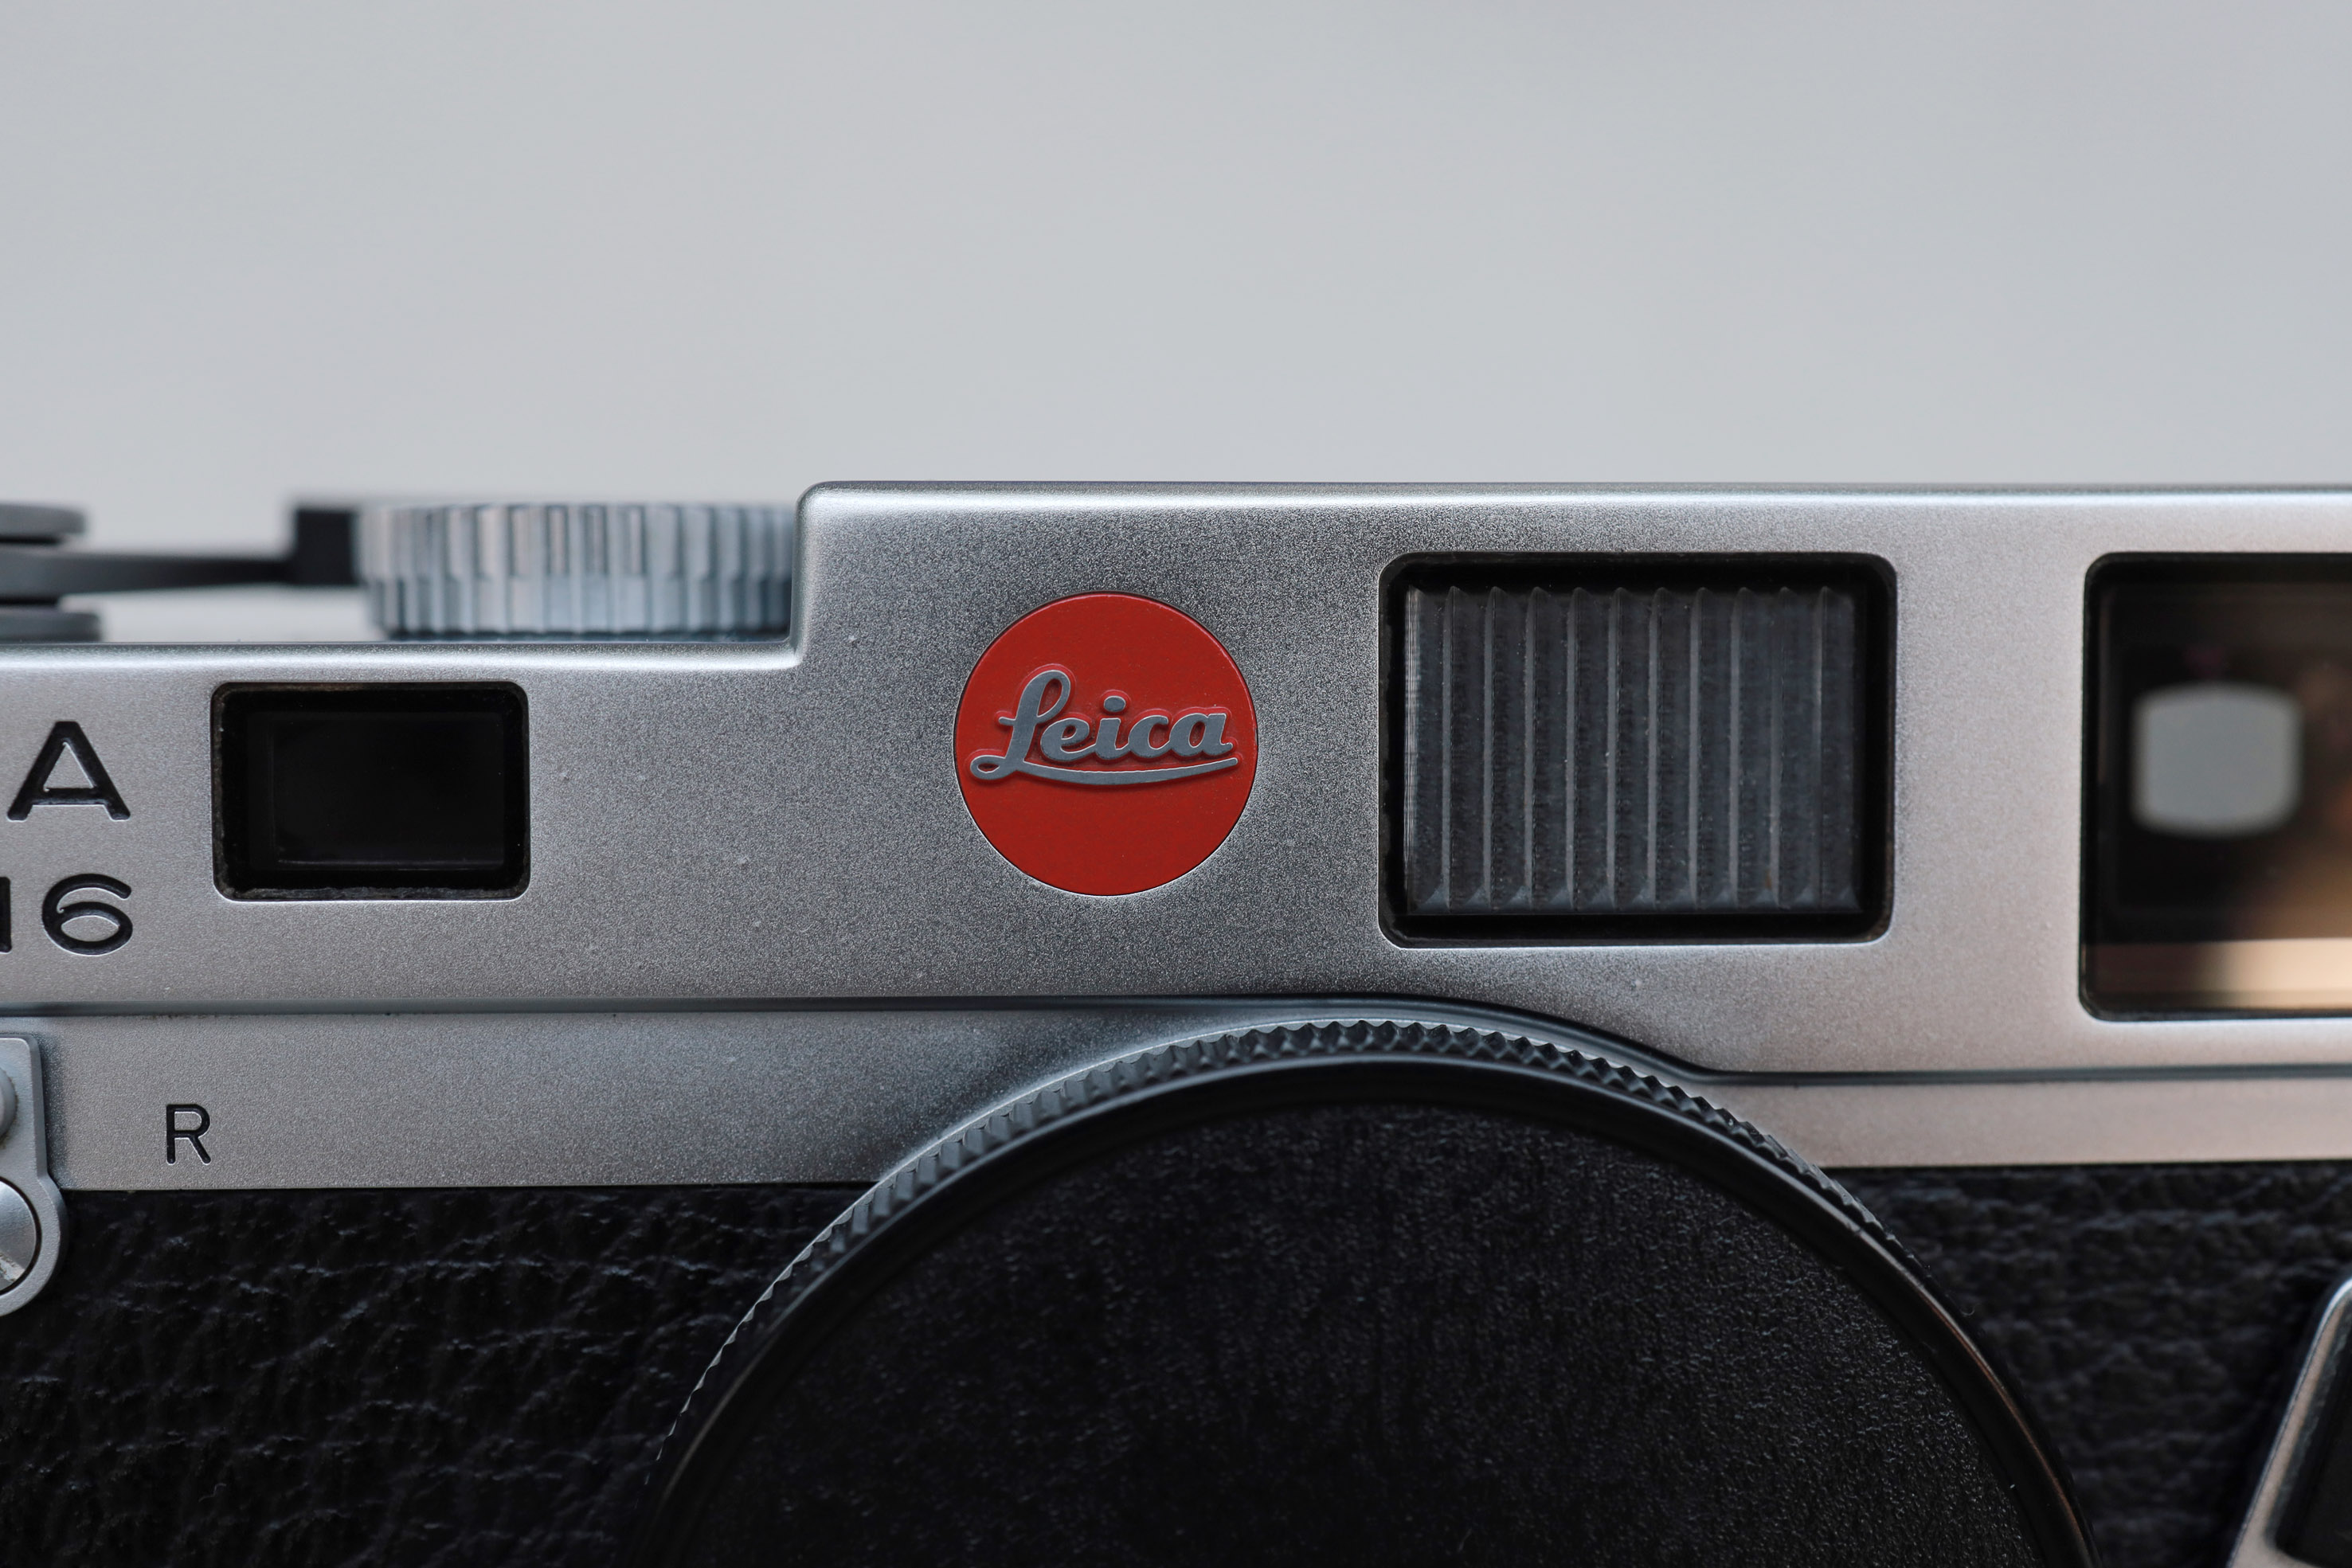 Leica M6 body Classic Chrome